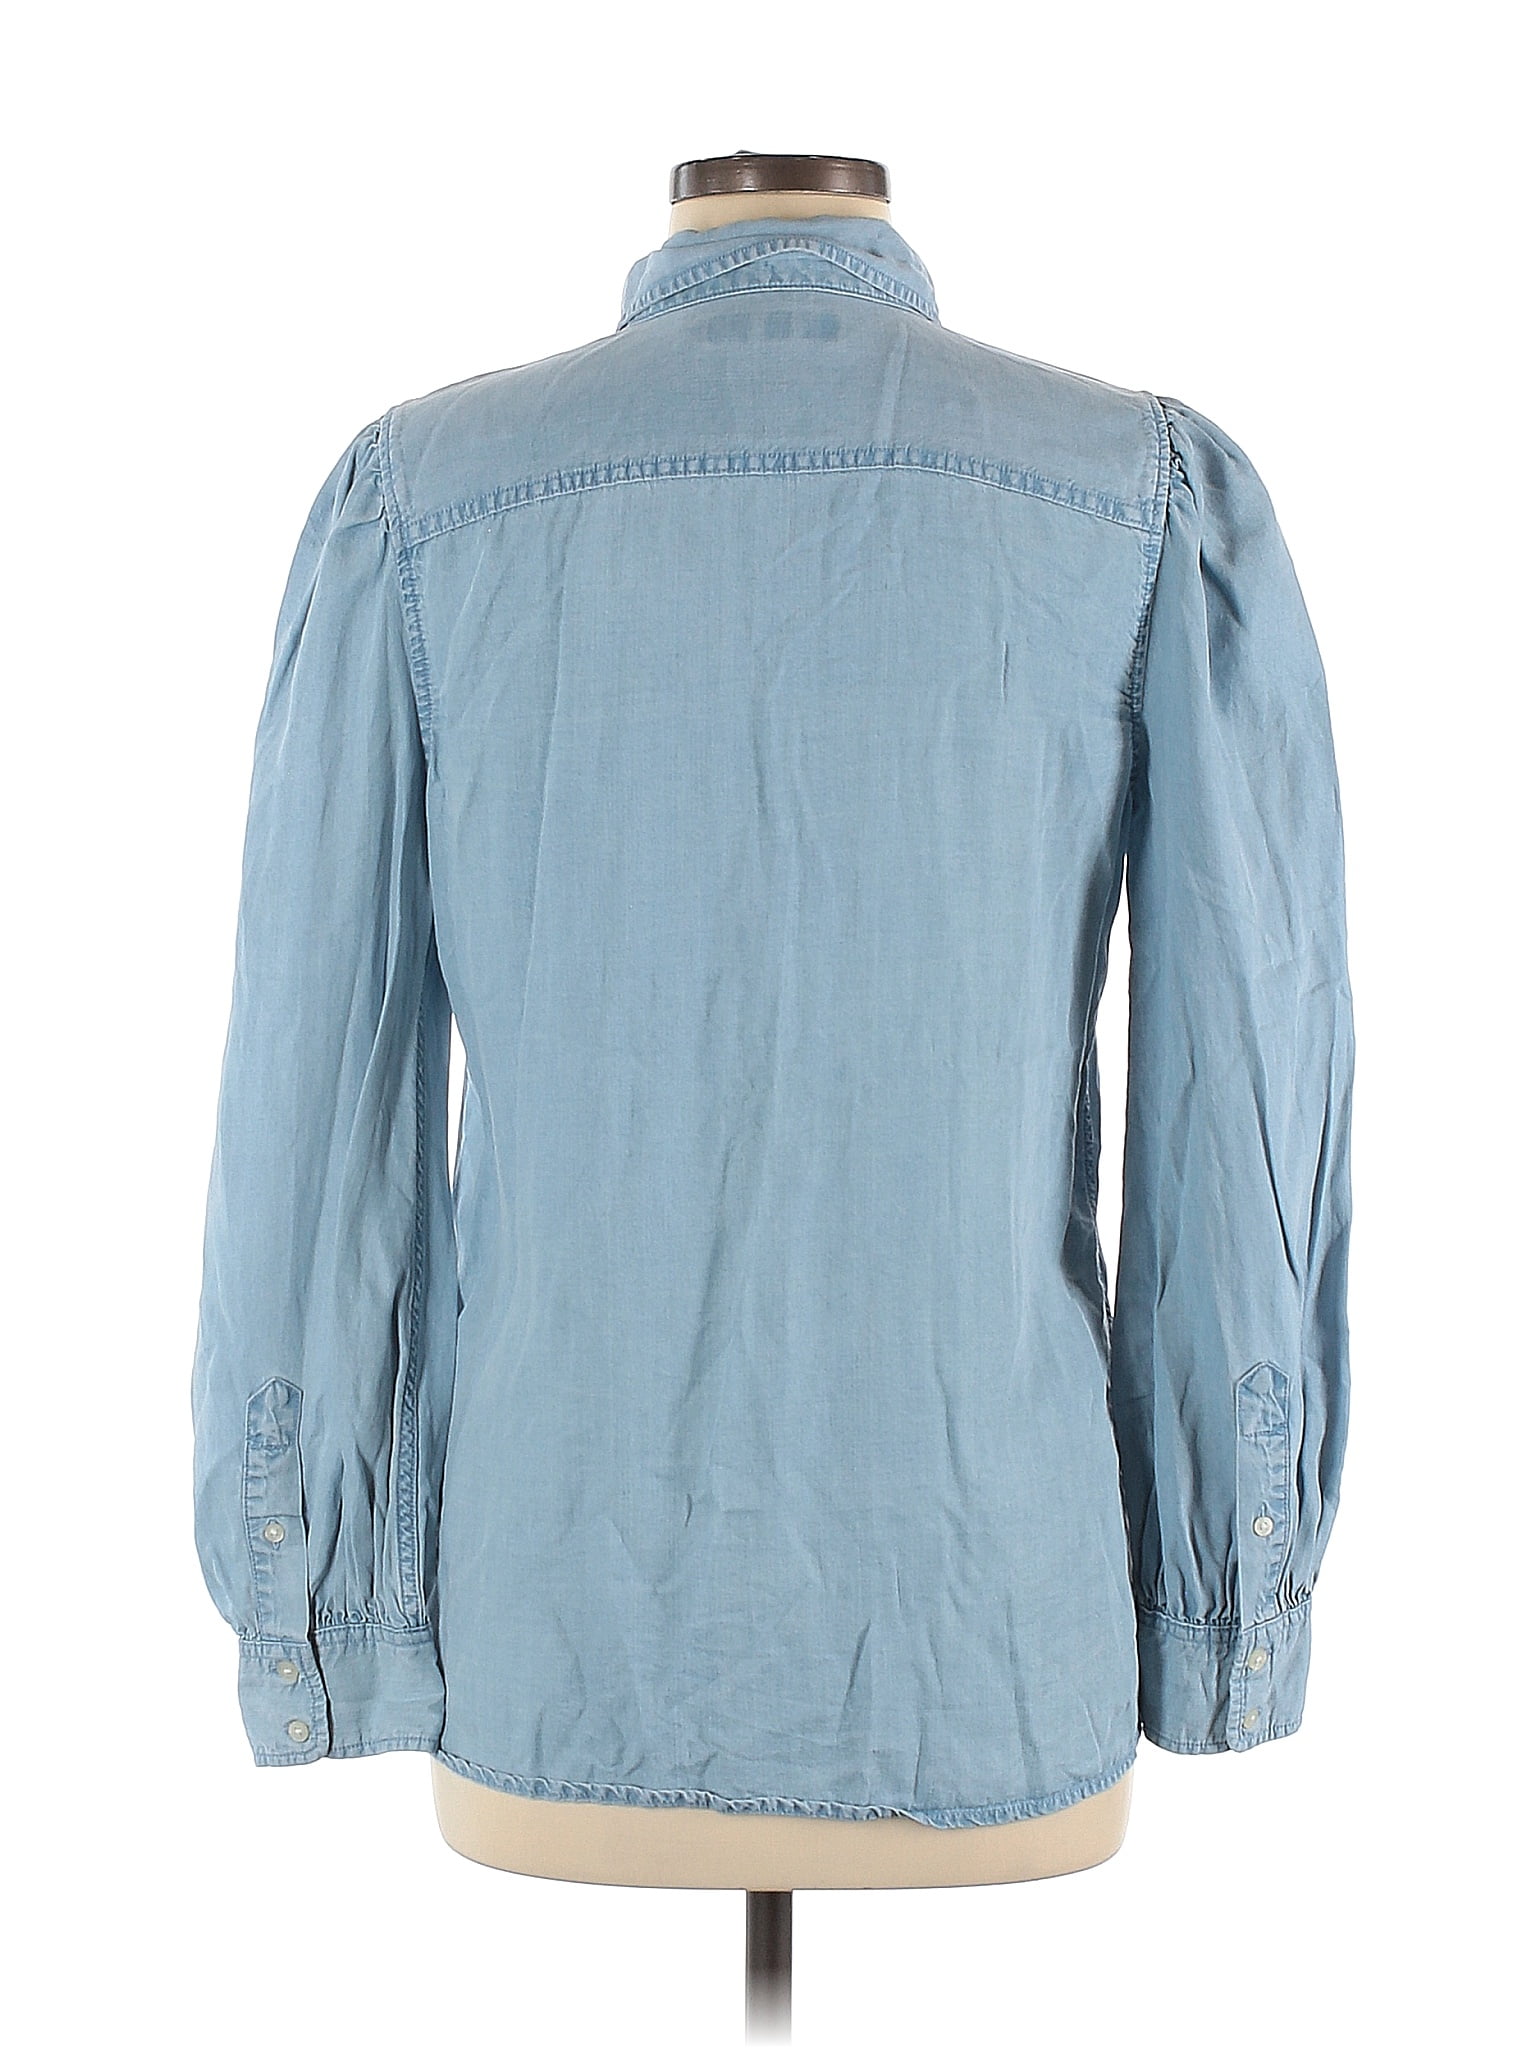 Lauren by Ralph Lauren Long Sleeve Button Down Shirt: Blue Tops - Women's Size Medium, thredUP